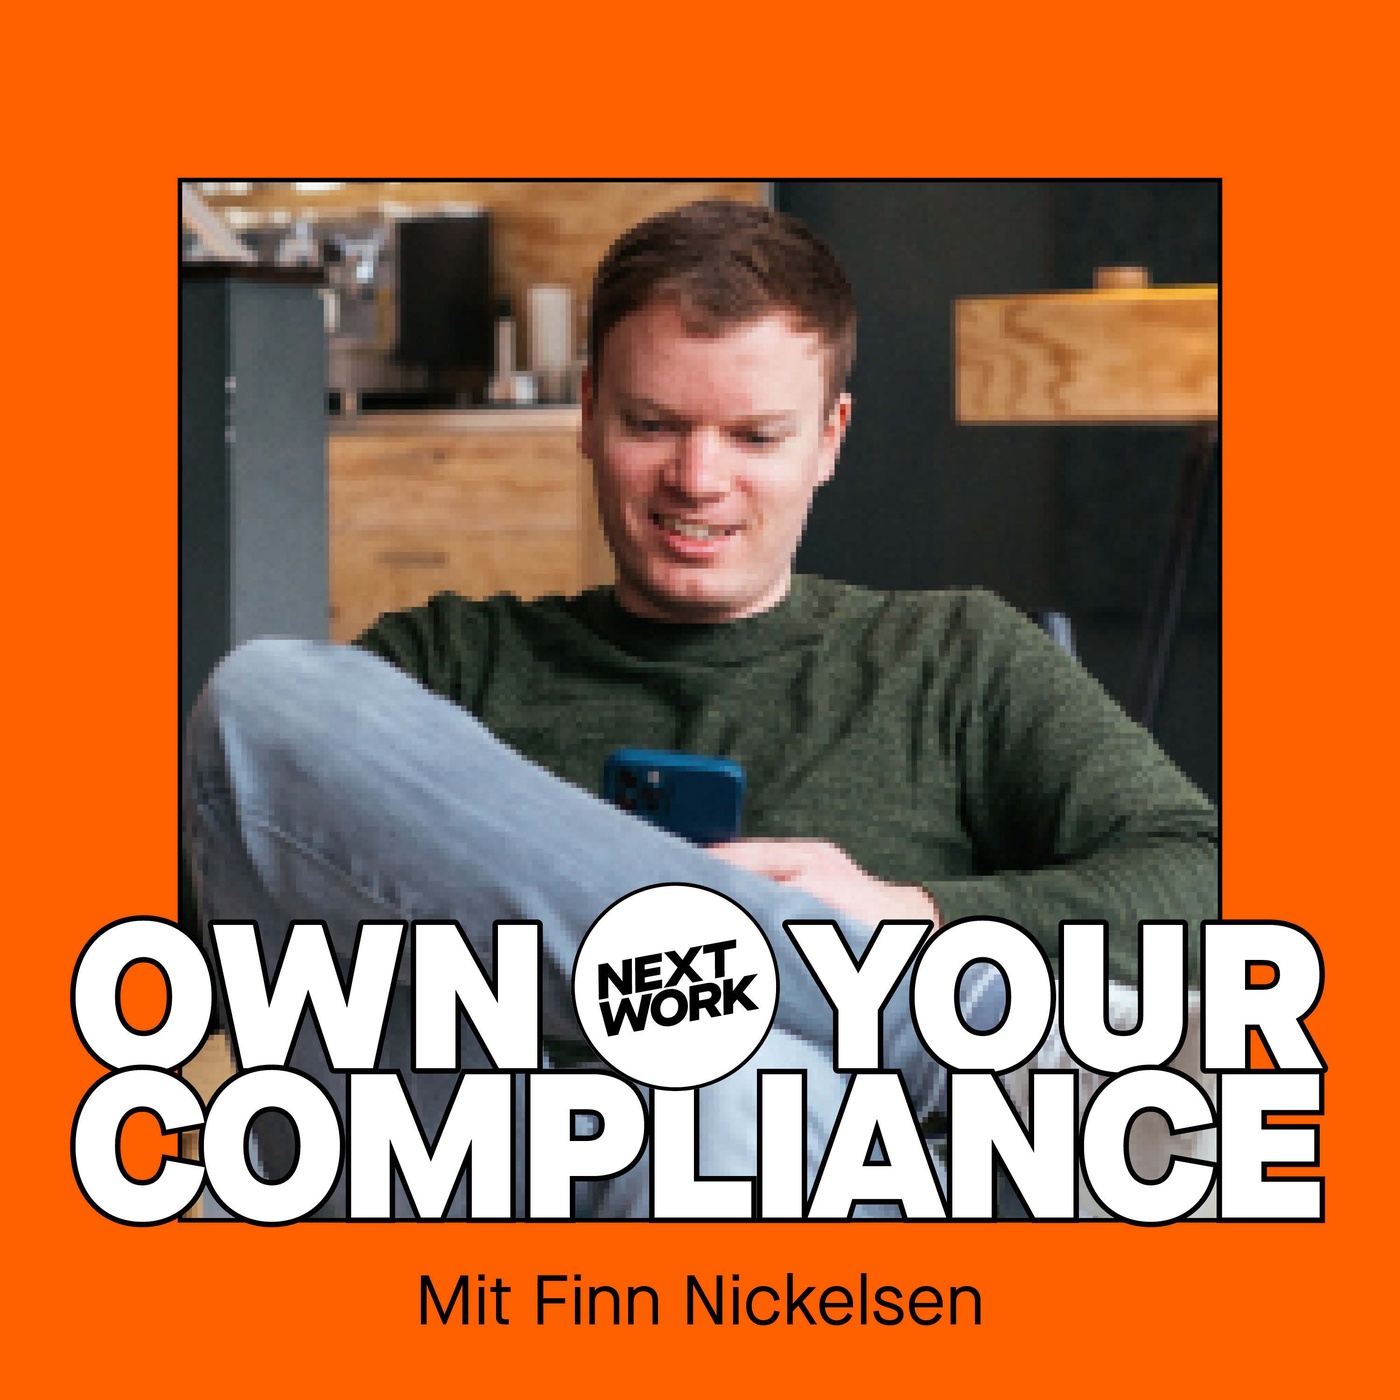 IT-Sicherheit mit Finn Nickelsen, Teil 2: Die »BIG FIVE« der IT-Sicherheit